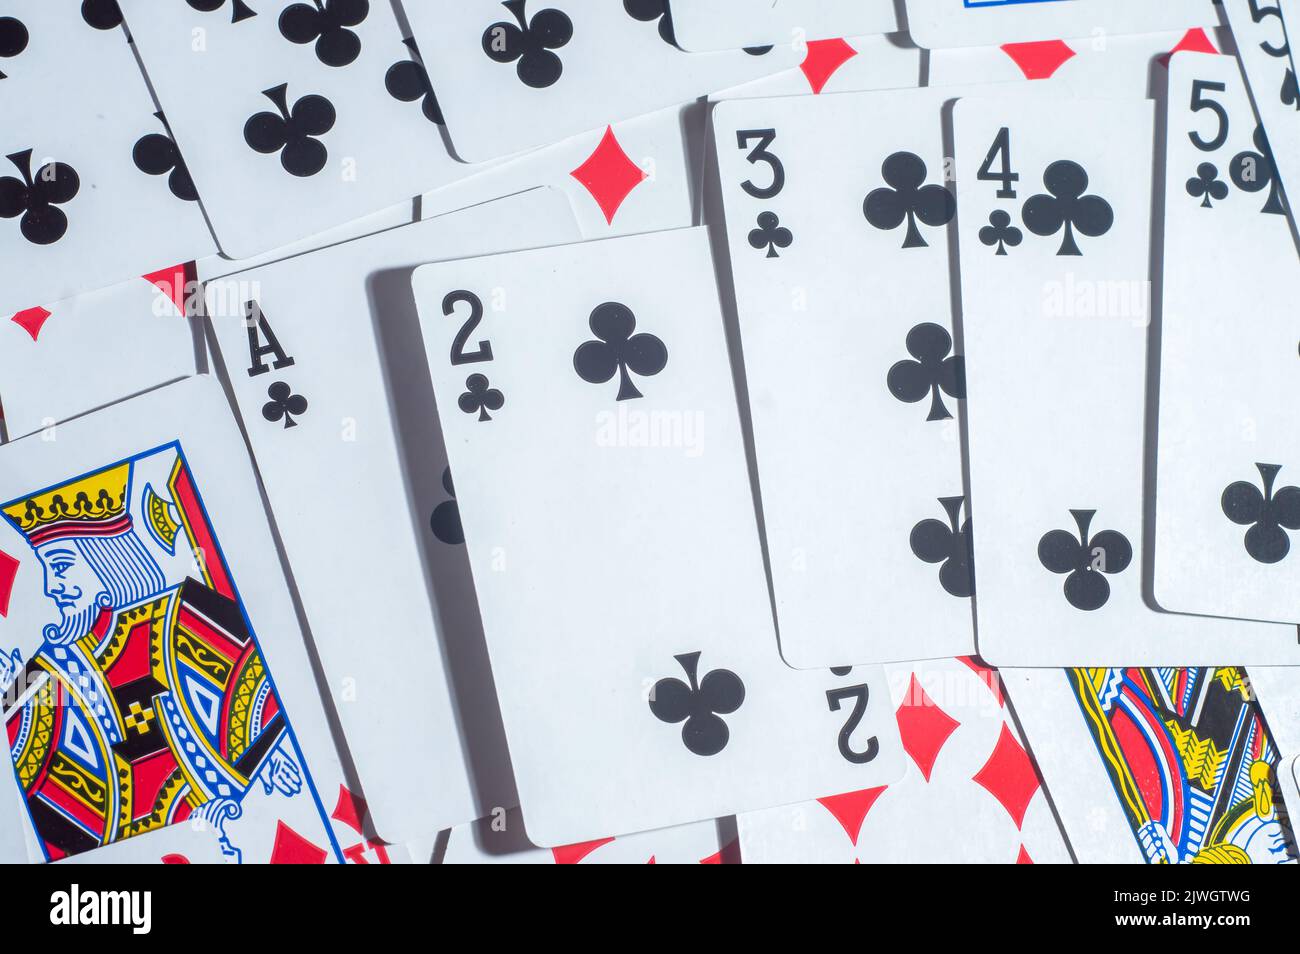 Casino Karten Poker Blackjack, Hand hält Pokerchips mit Kopierraum und Deck Karte Hintergrund. Stockfoto